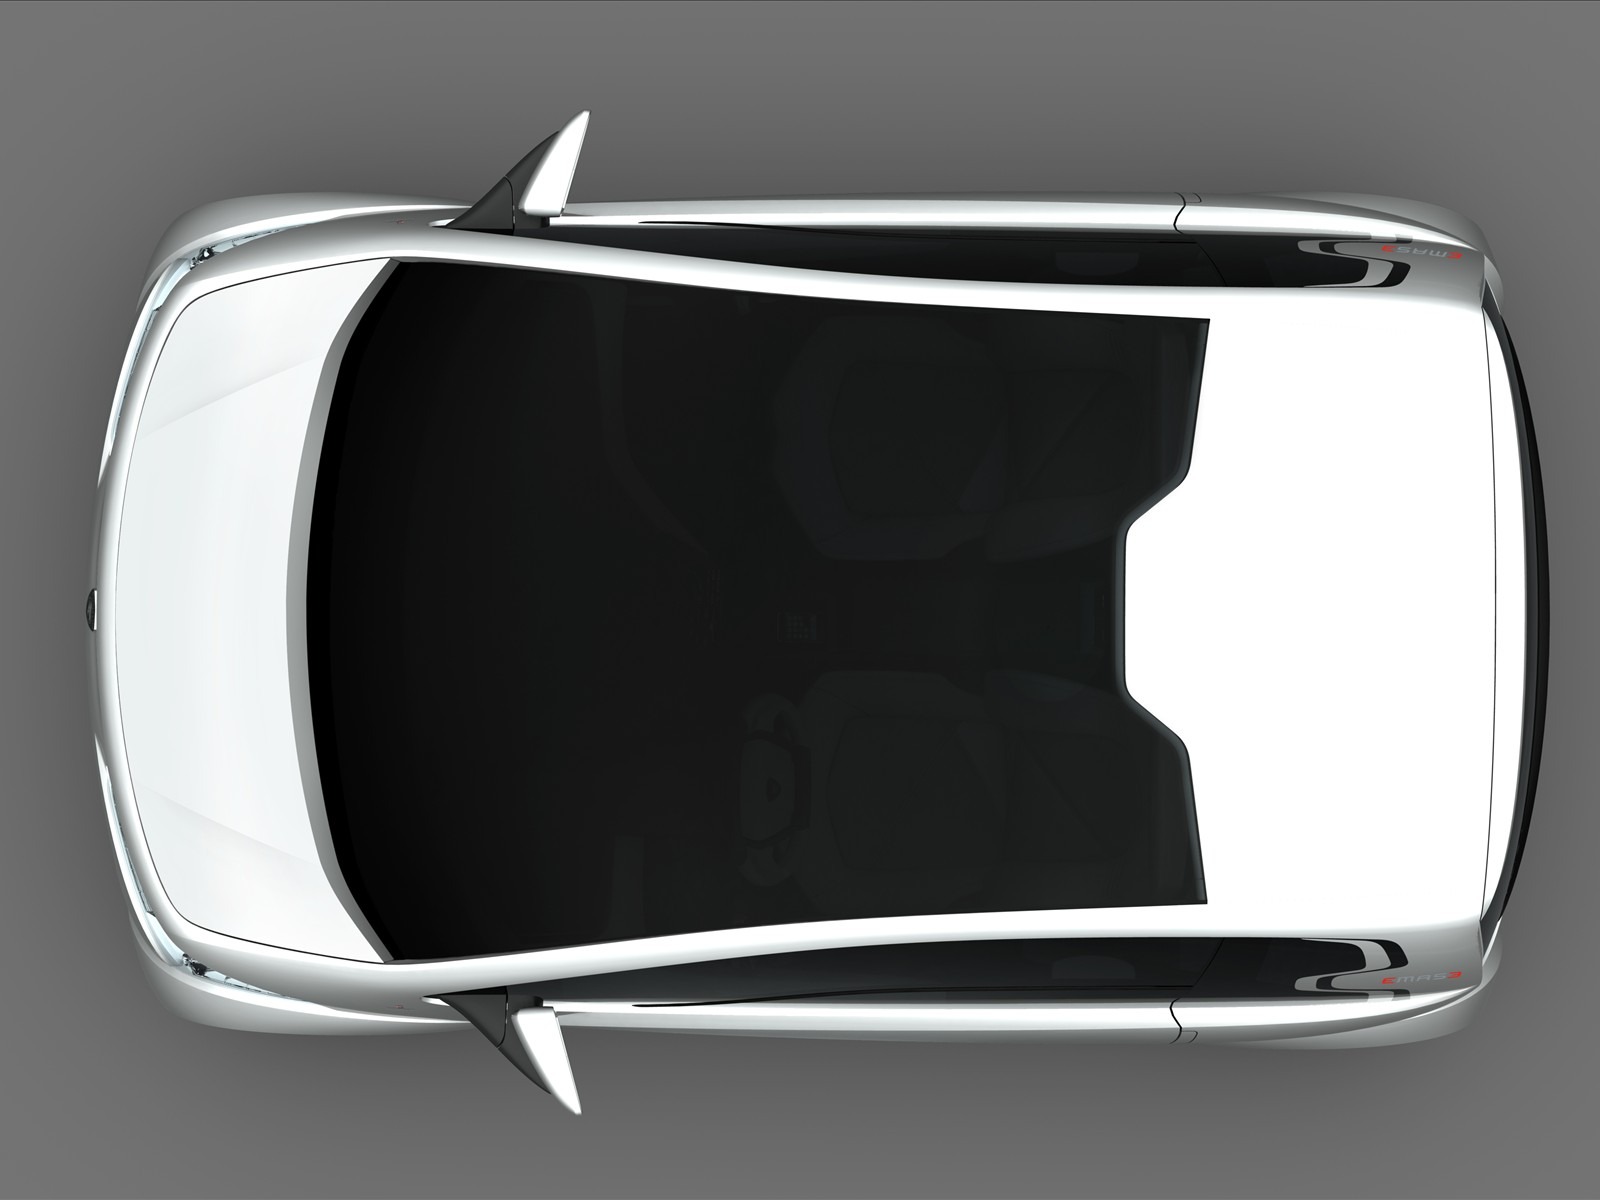 édition spéciale de concept cars fond d'écran (8) #17 - 1600x1200